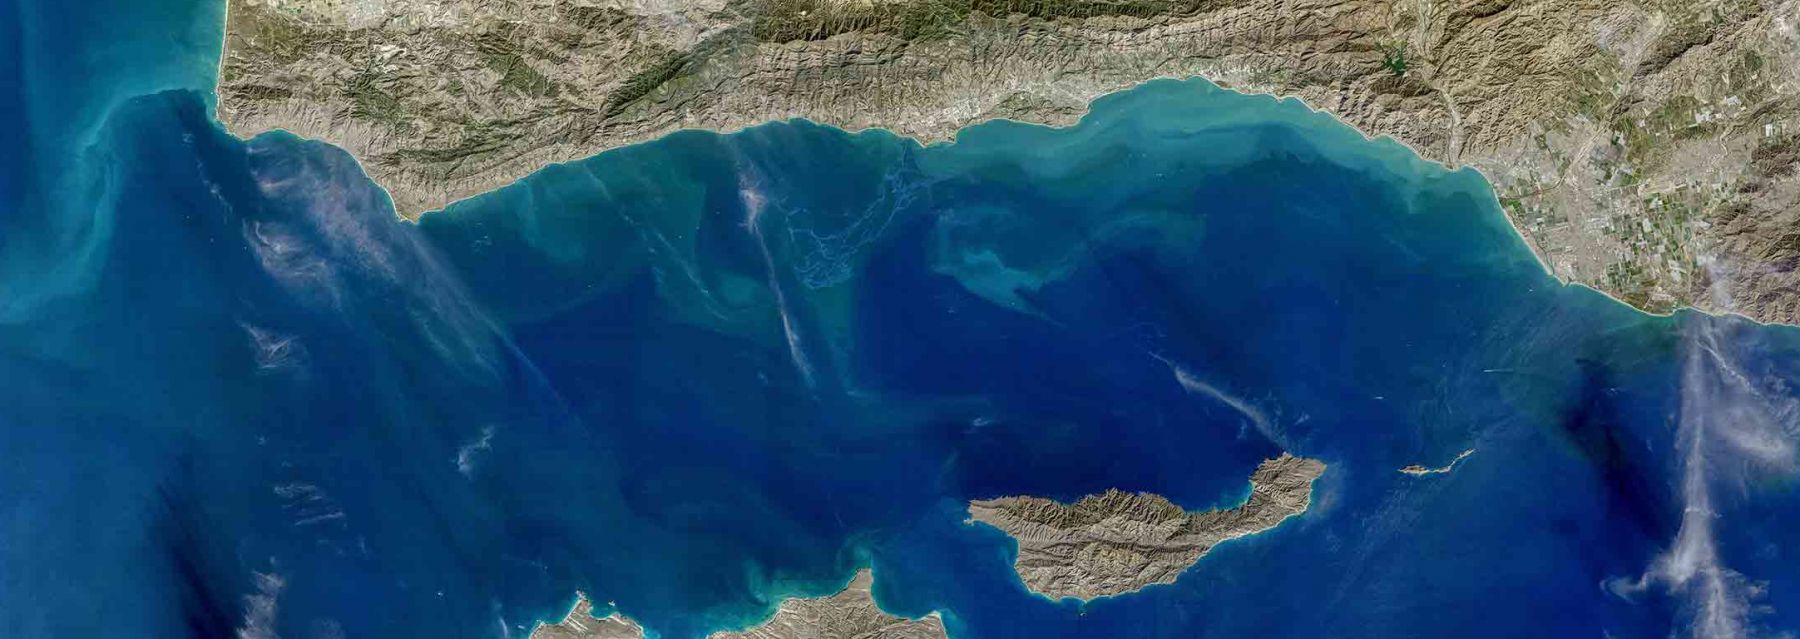 Landsat-8 Image of Santa Barbara Channel. Credit: NASA Goddard OBPG